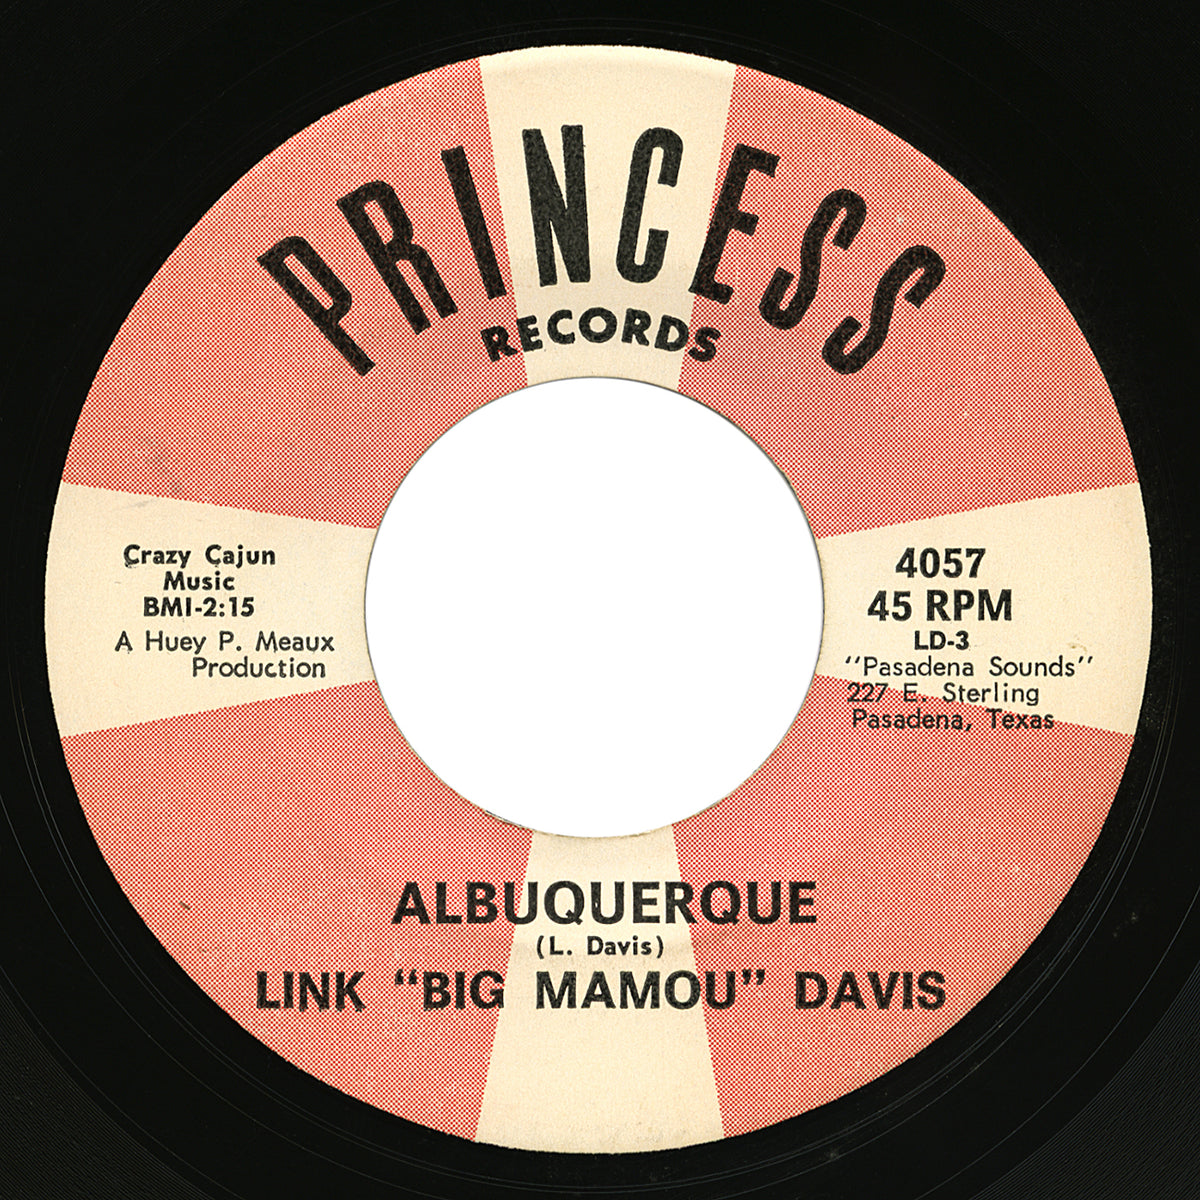 Link “Big Mamou” Davis – Albuquerque – Princess